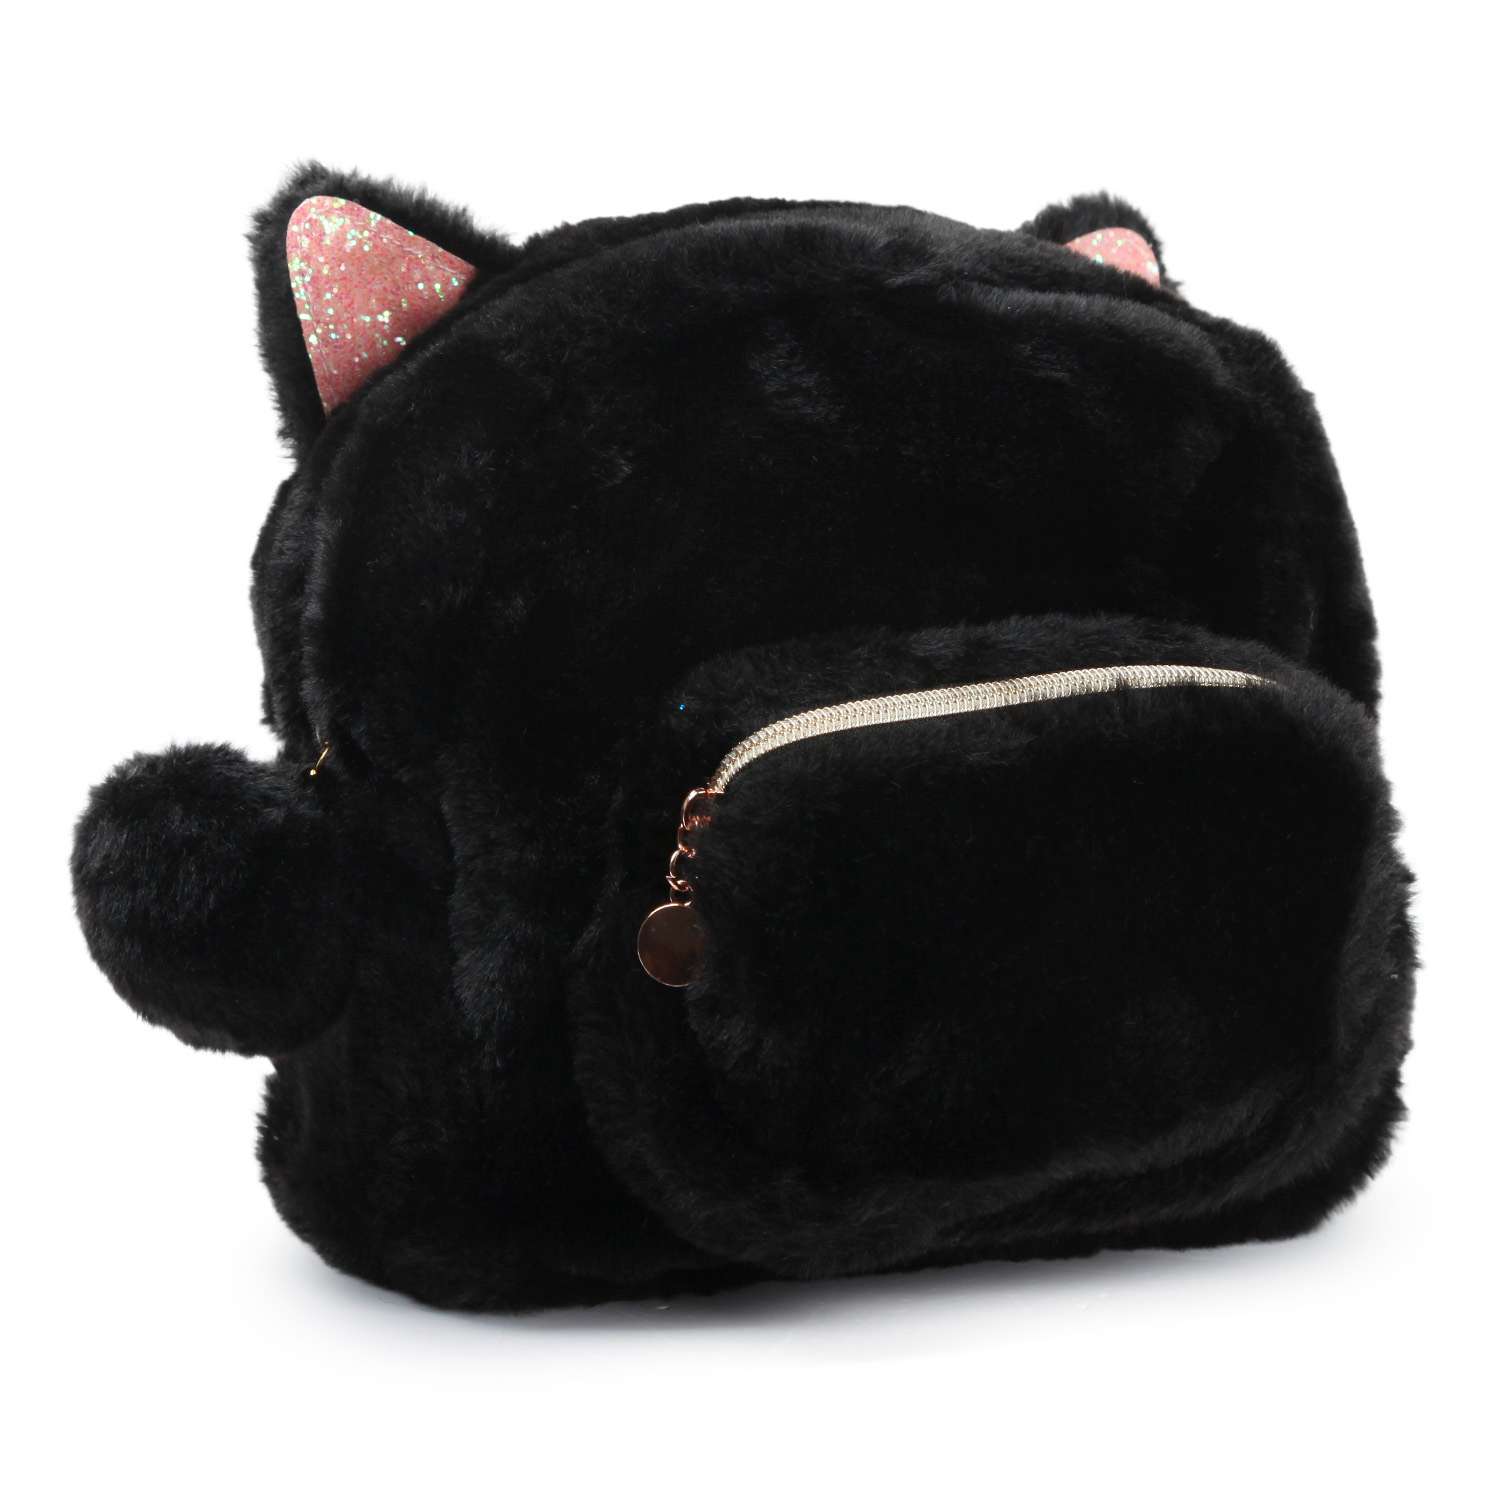 Рюкзак Johnshen PinkMagic Кошка Черный MF992522-1 - фото 2